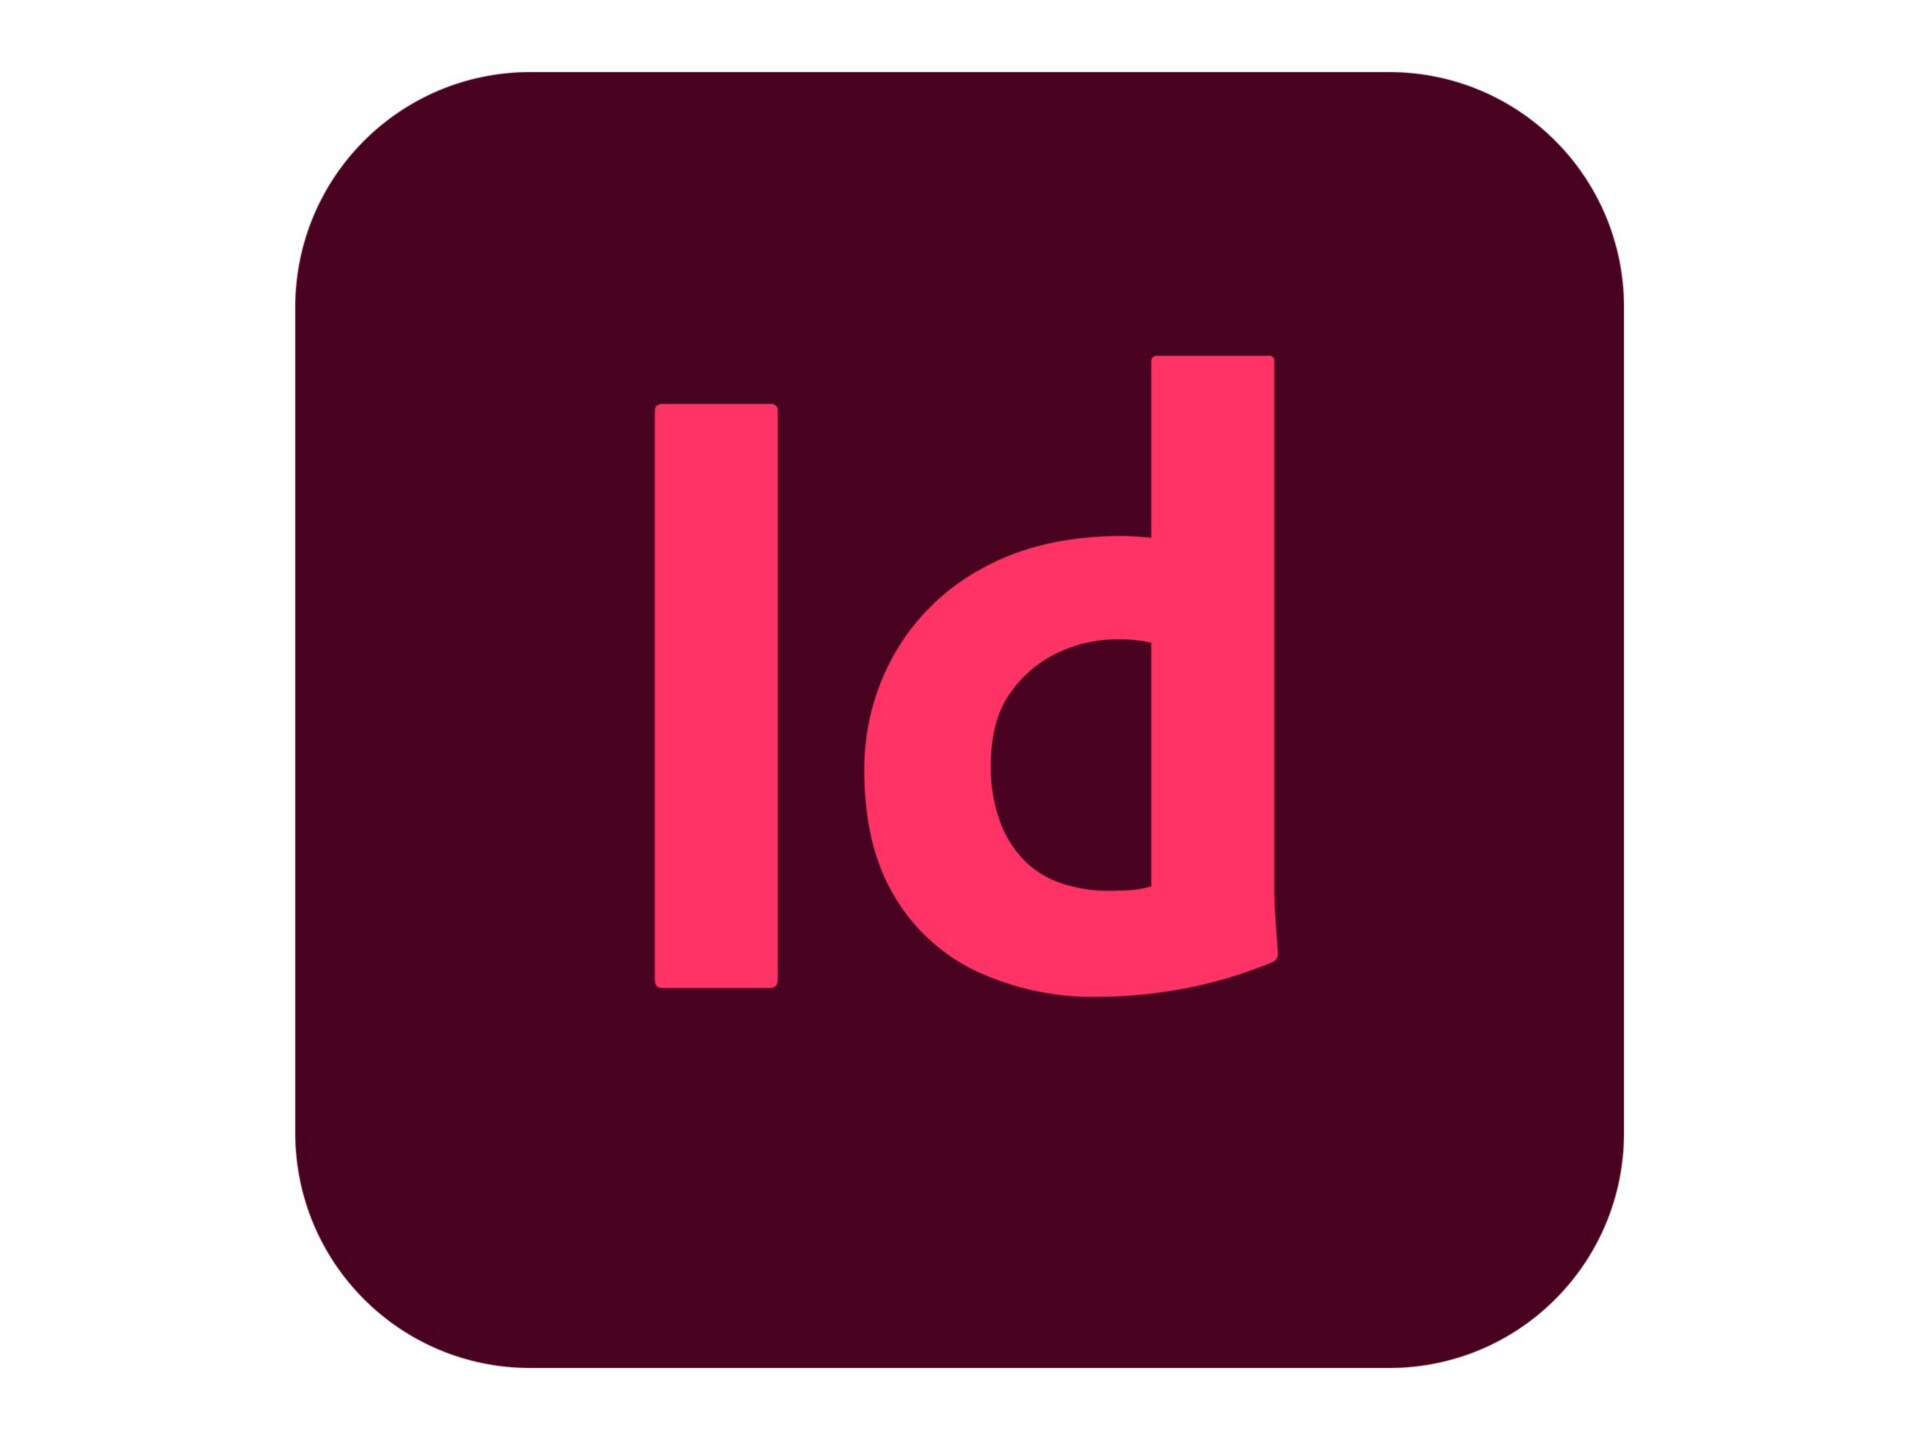 Adobe InDesign CC for Enterprise - Subscription New (39 months) - 1 named u